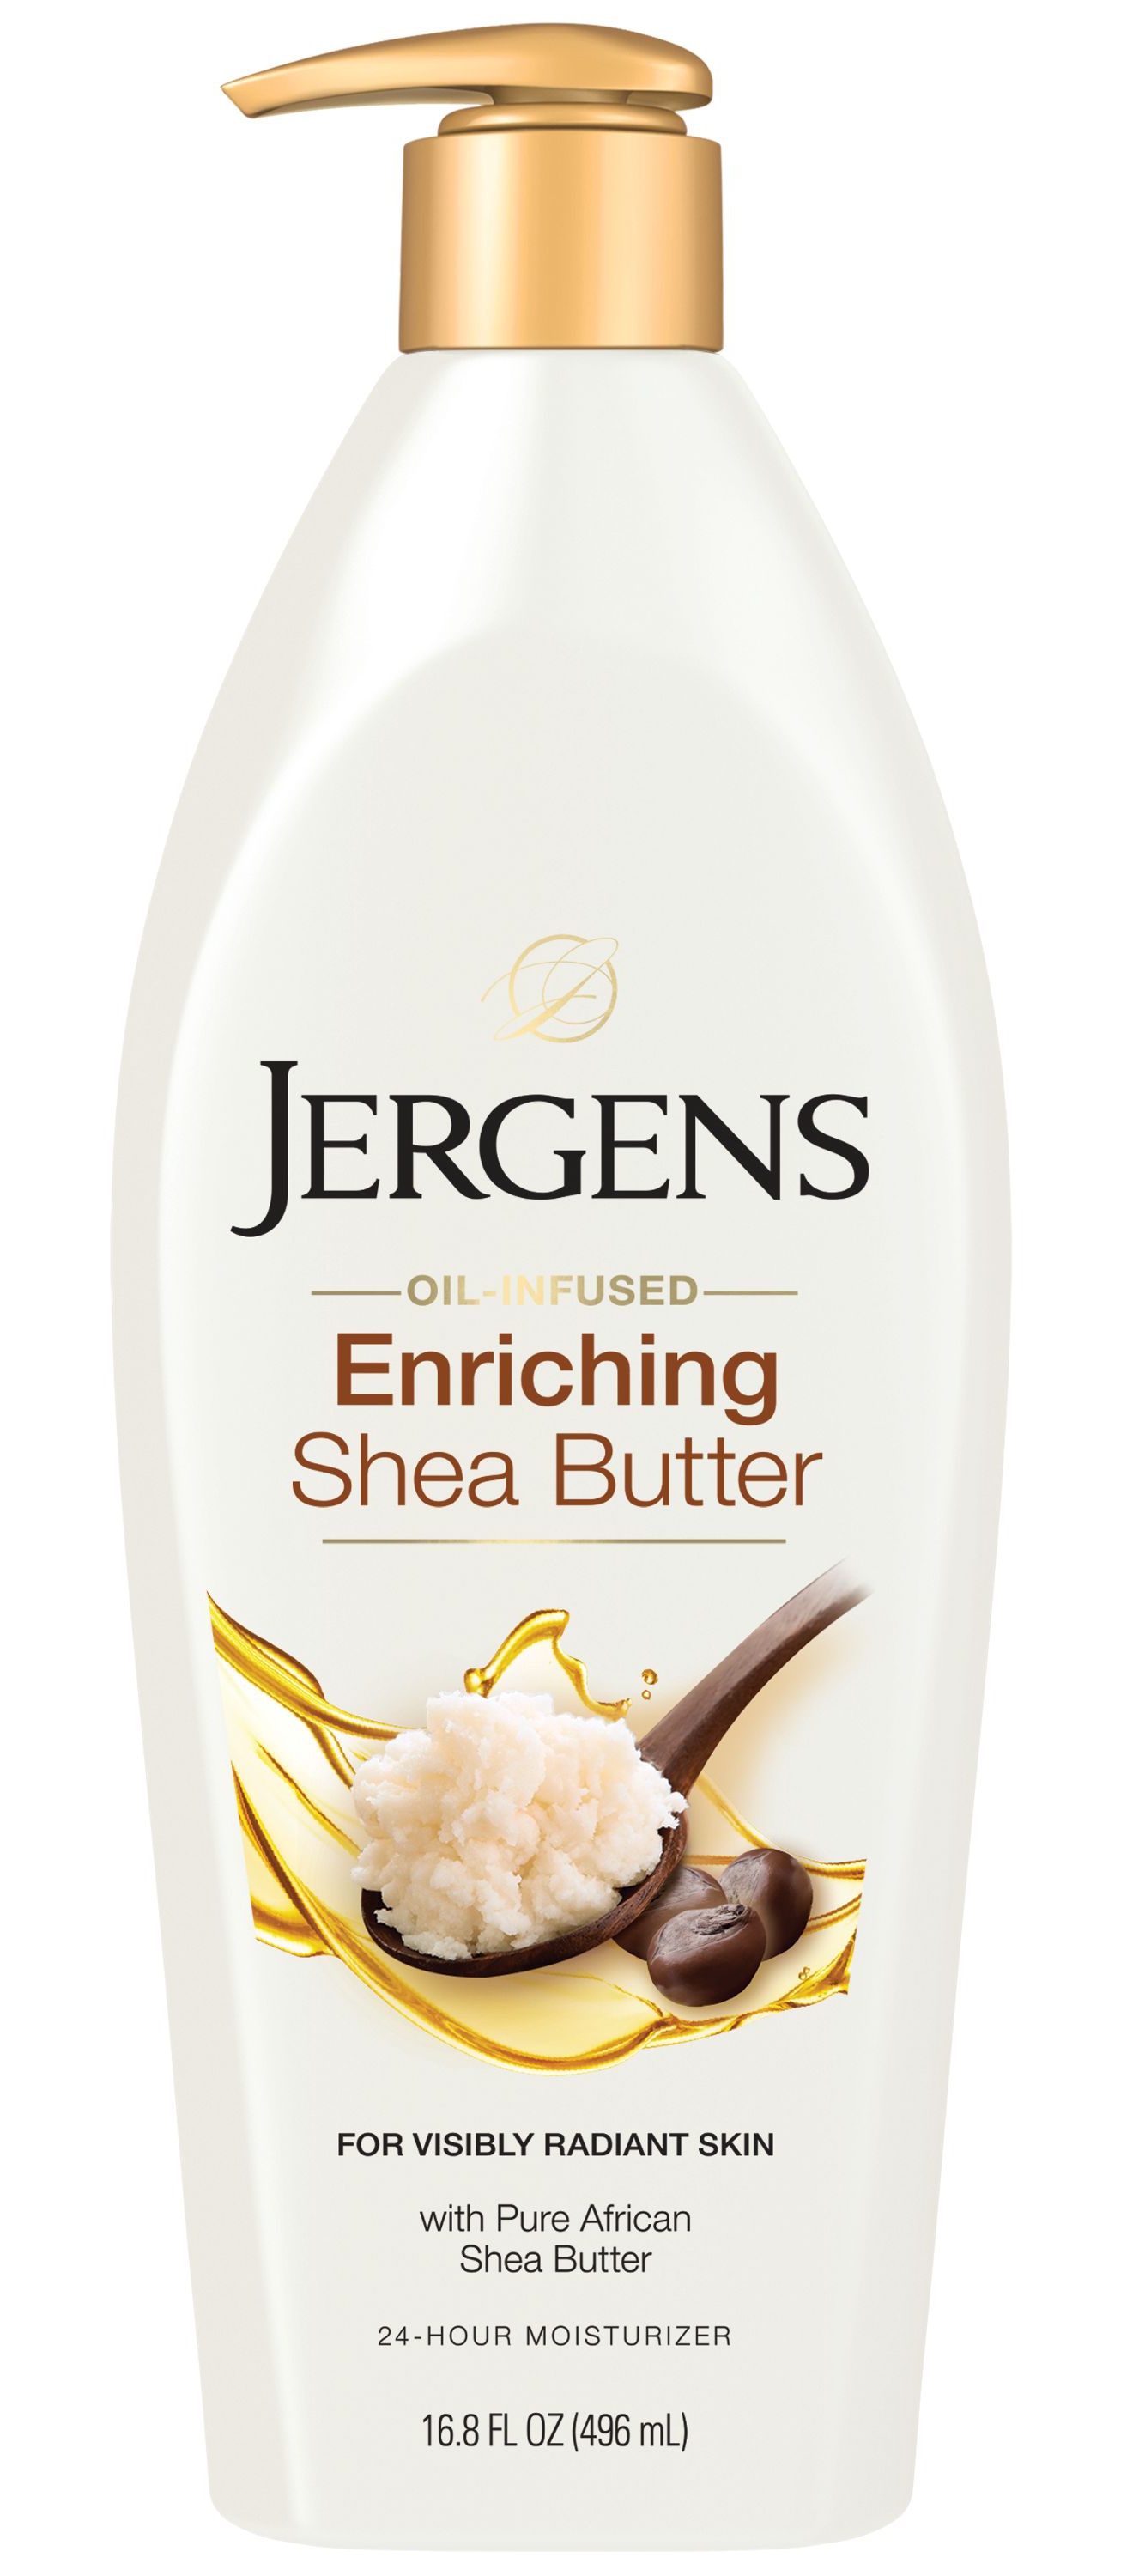 JERGENS Enriching Shea Butter